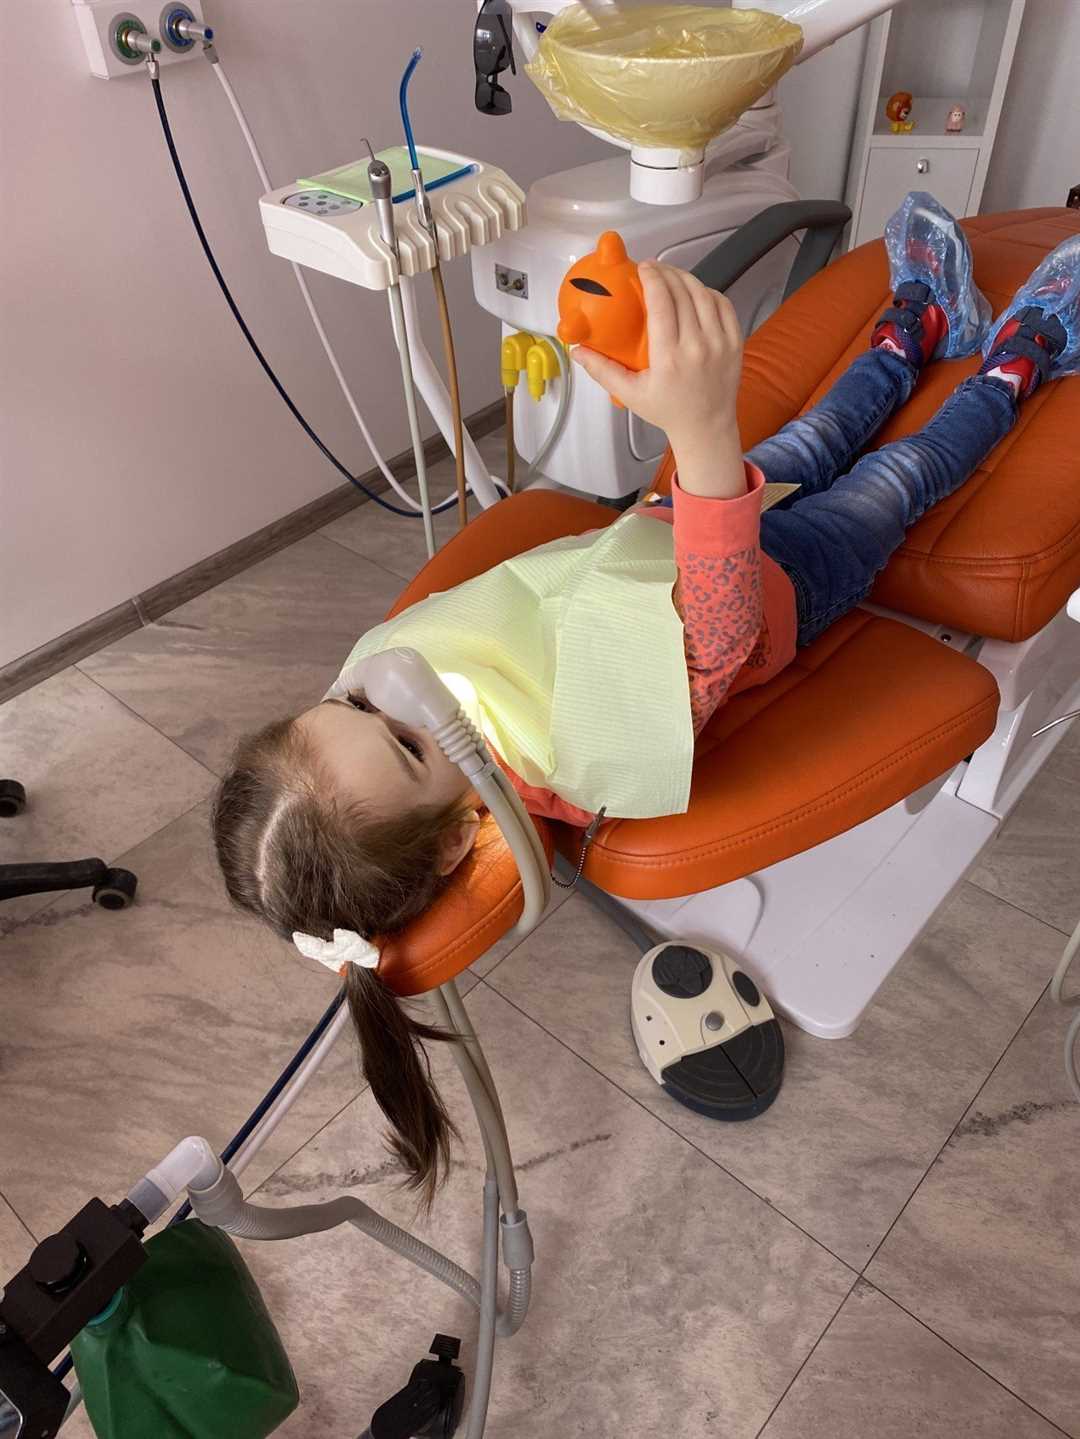 Лечение зубов под наркозом у детей